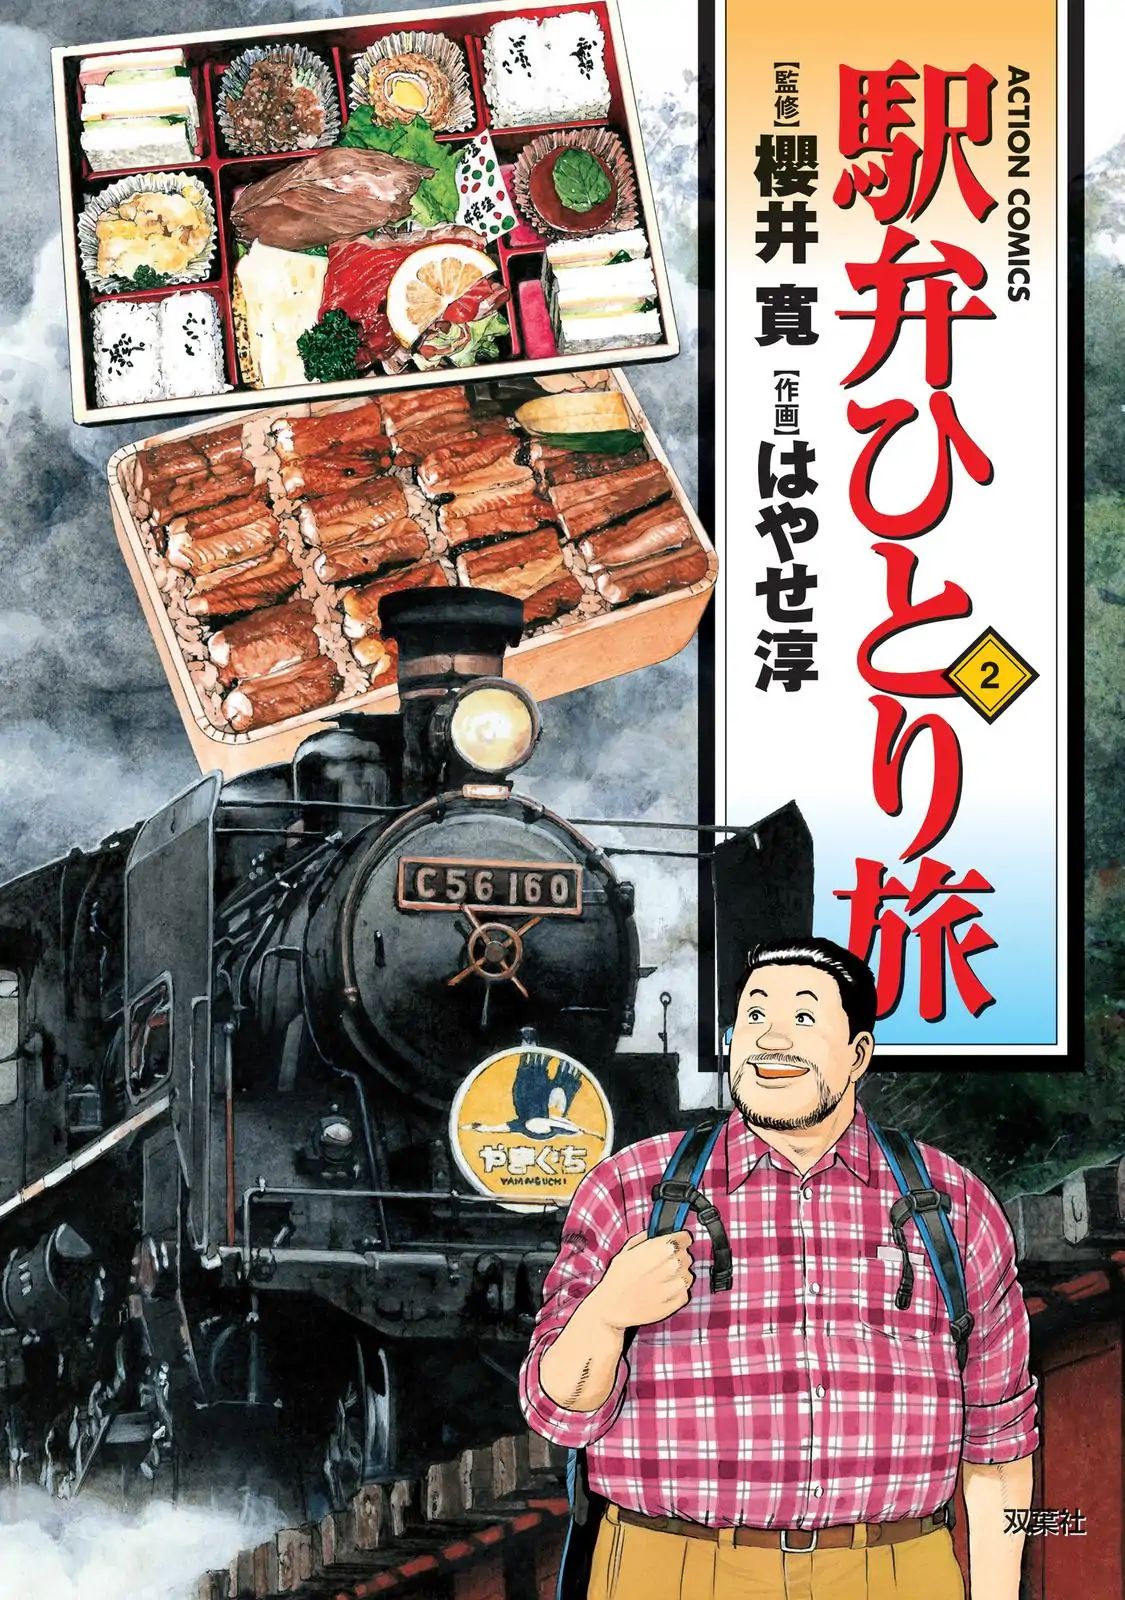 Ekiben Hitoritabi Vol.2 Chapter 13: Matsuyama Station Imabari Station - Shoyu Rice Seto-No-Oshizushi